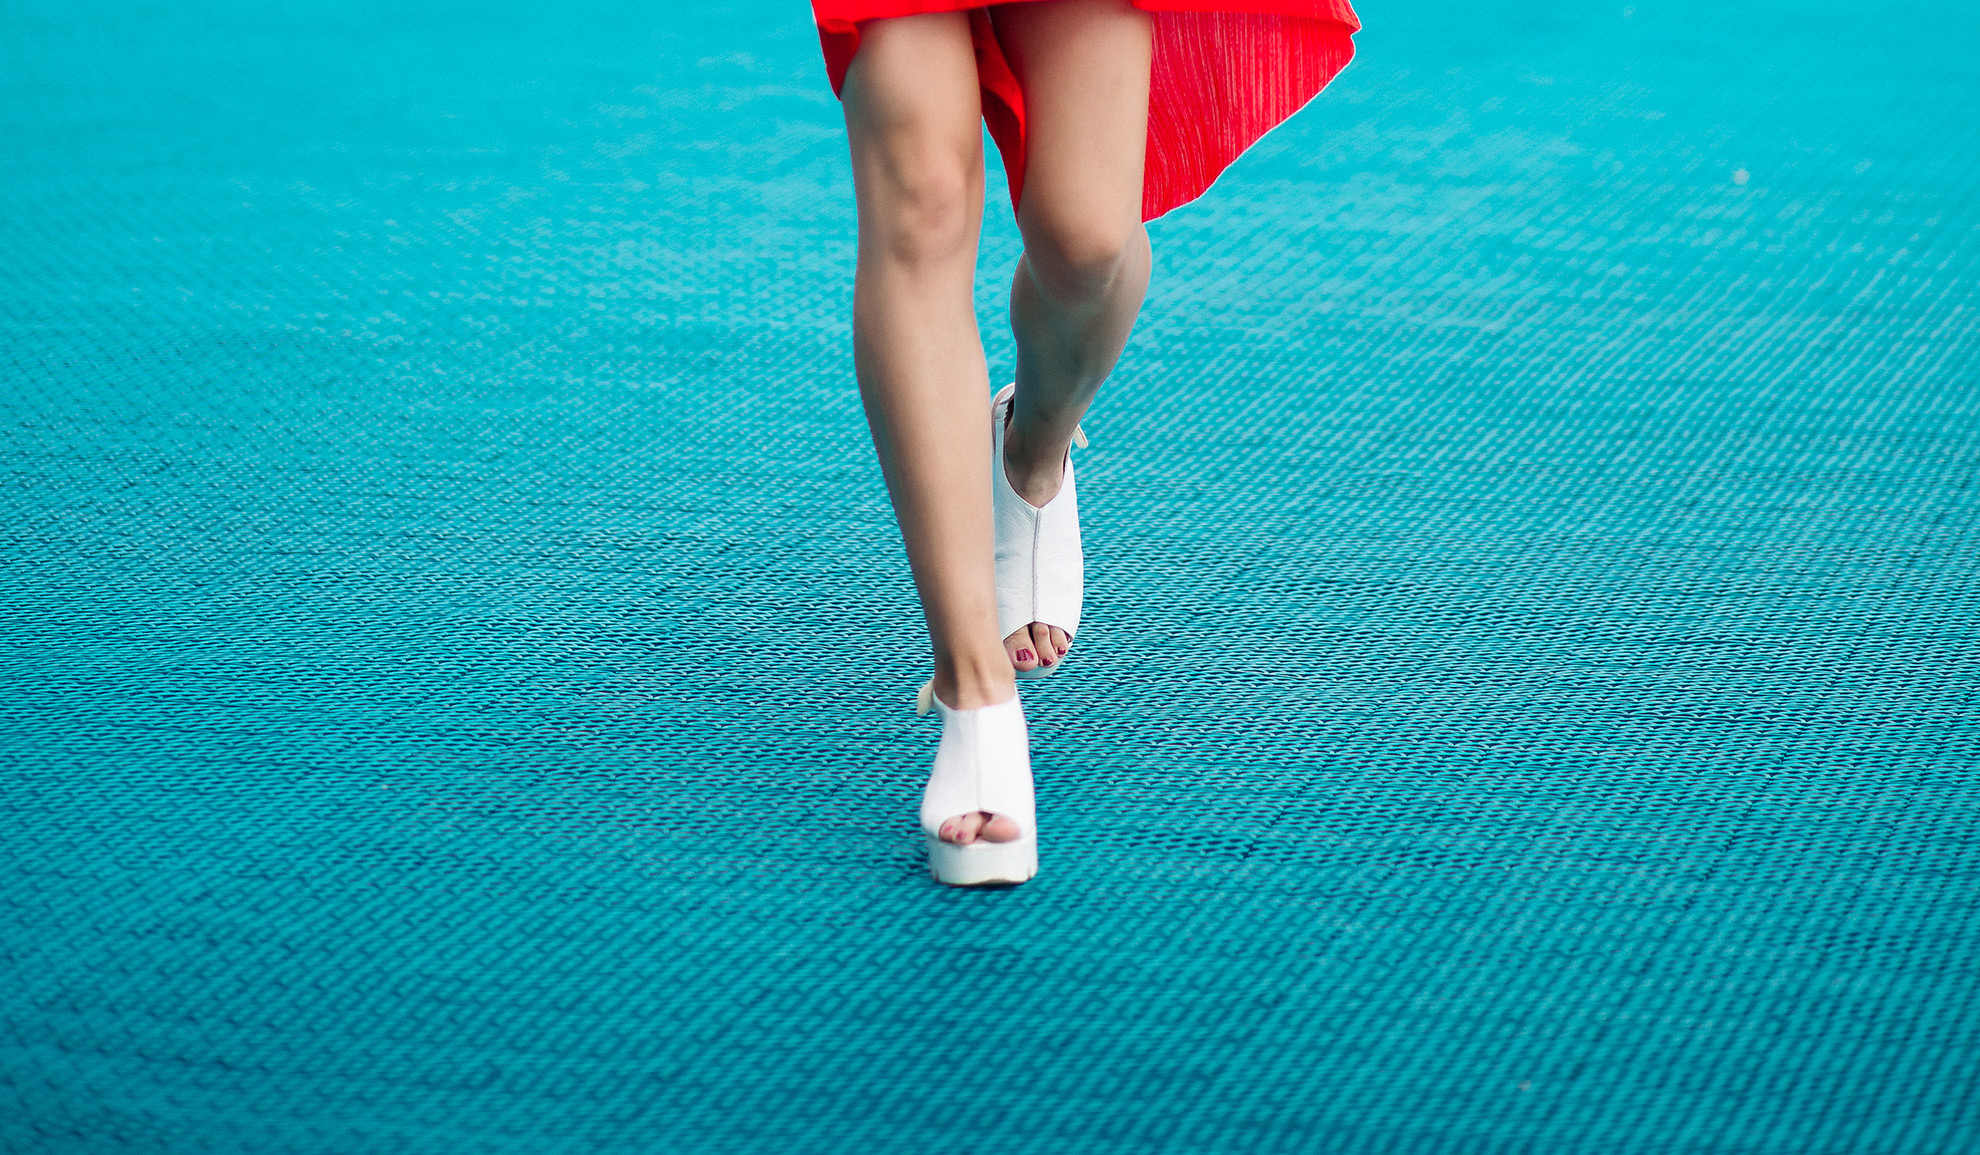 Nogi kobiece z sandałami, ilustracja do artykułu